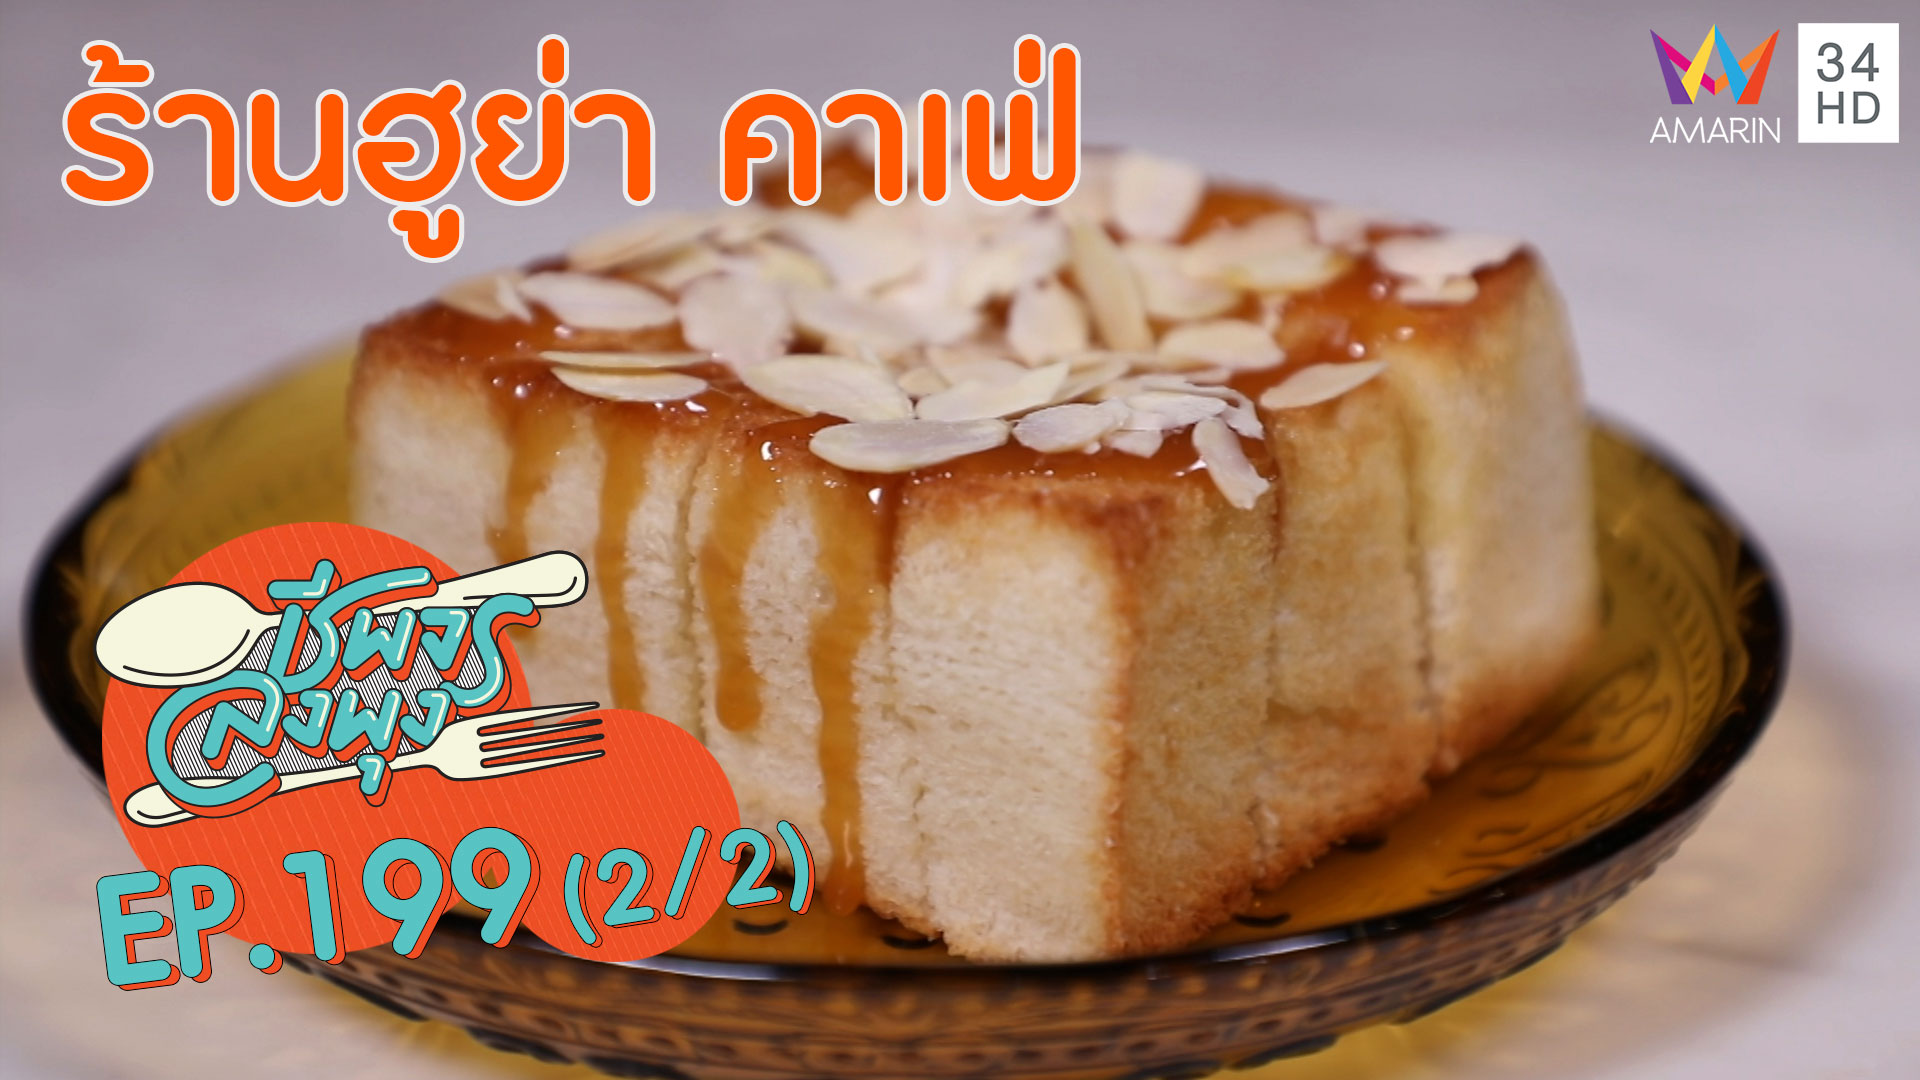 ชีพจรลงพุง ซีซั่น 5 | ขนมปังราดคาราเมลฉ่ำๆ รสชาติเยี่ยม! @"ร้านฮูย่า คาเฟ่" | 22 ก.พ. 63 (2/2)